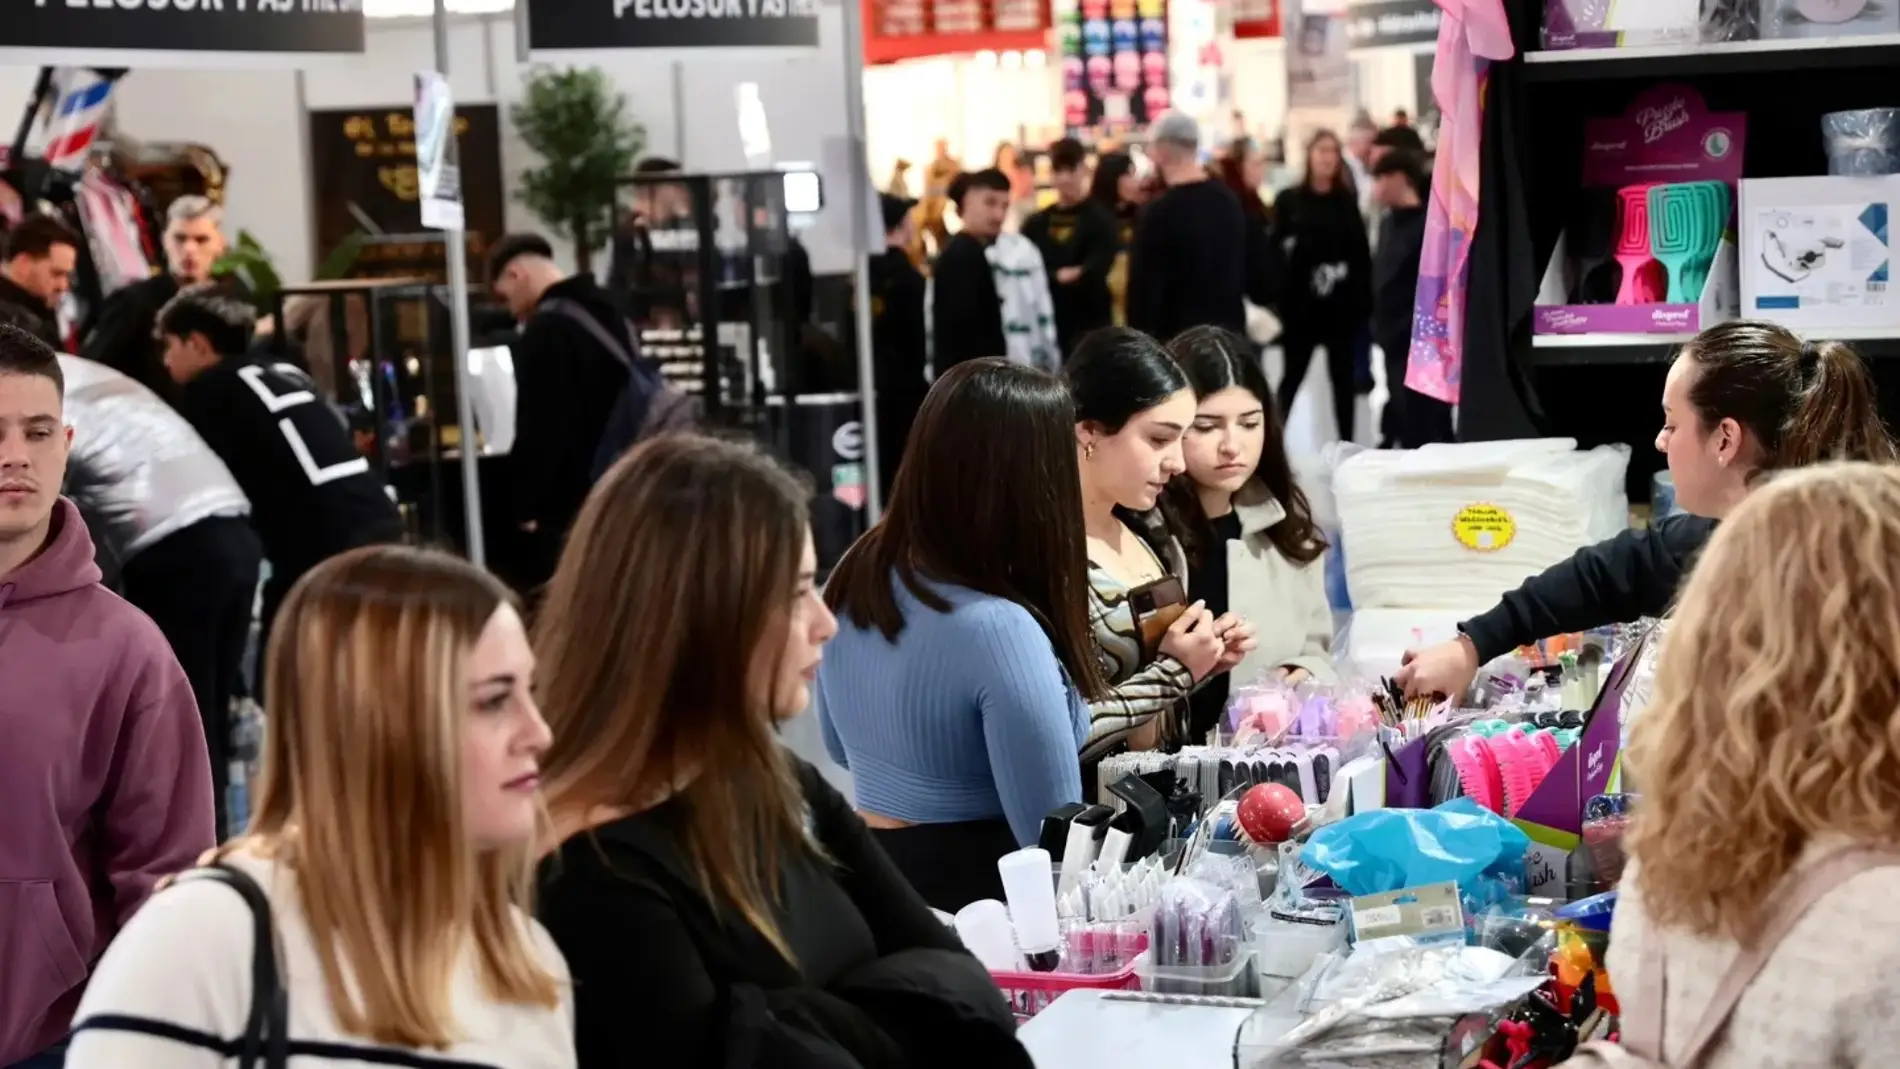 La Feria Andalucía Belleza y Moda reúne en Granada este finde semana a más de 70 empresas y 200 marcas